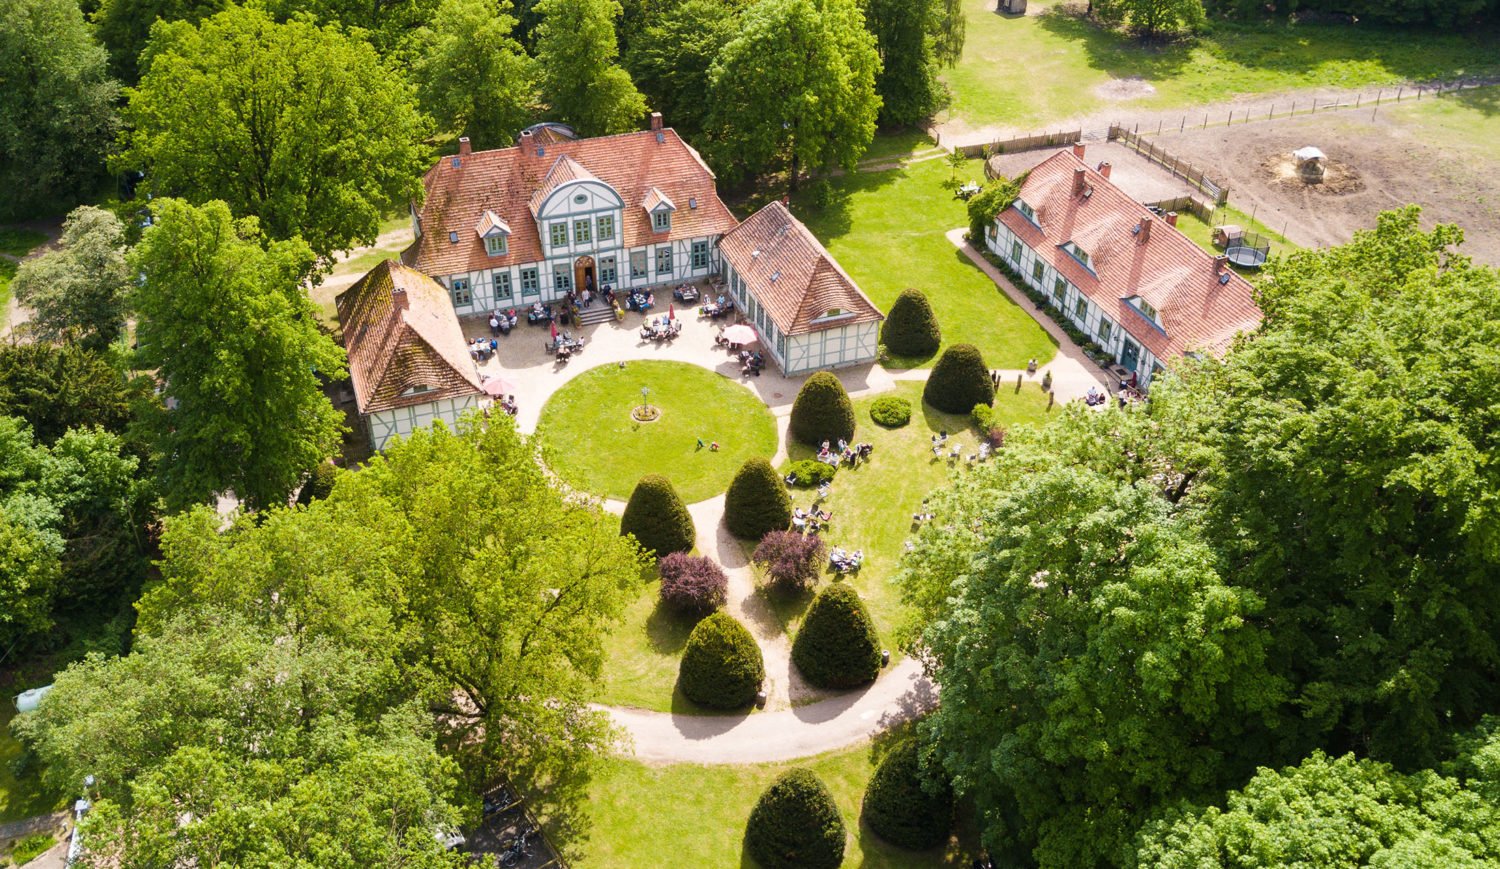 Blick auf das Jagdschloss Friedrichsmoor – der Prachtbau war einst Jagdsitz mecklenburgischer Herzöge